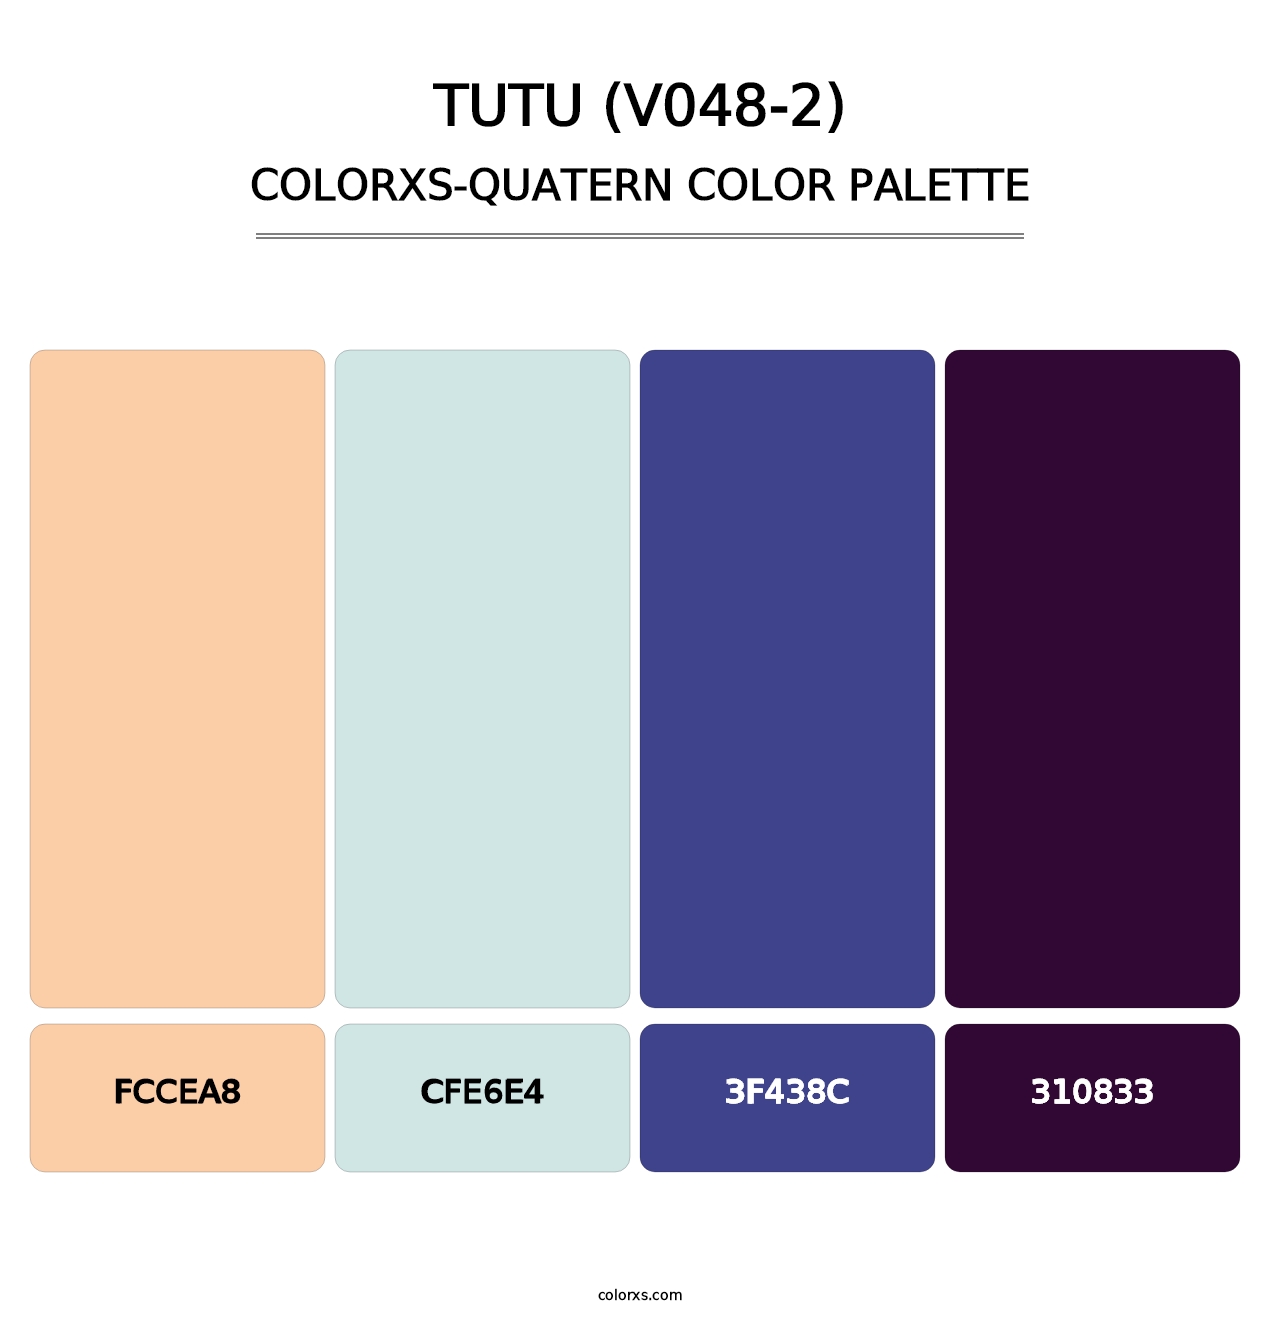 Tutu (V048-2) - Colorxs Quatern Palette